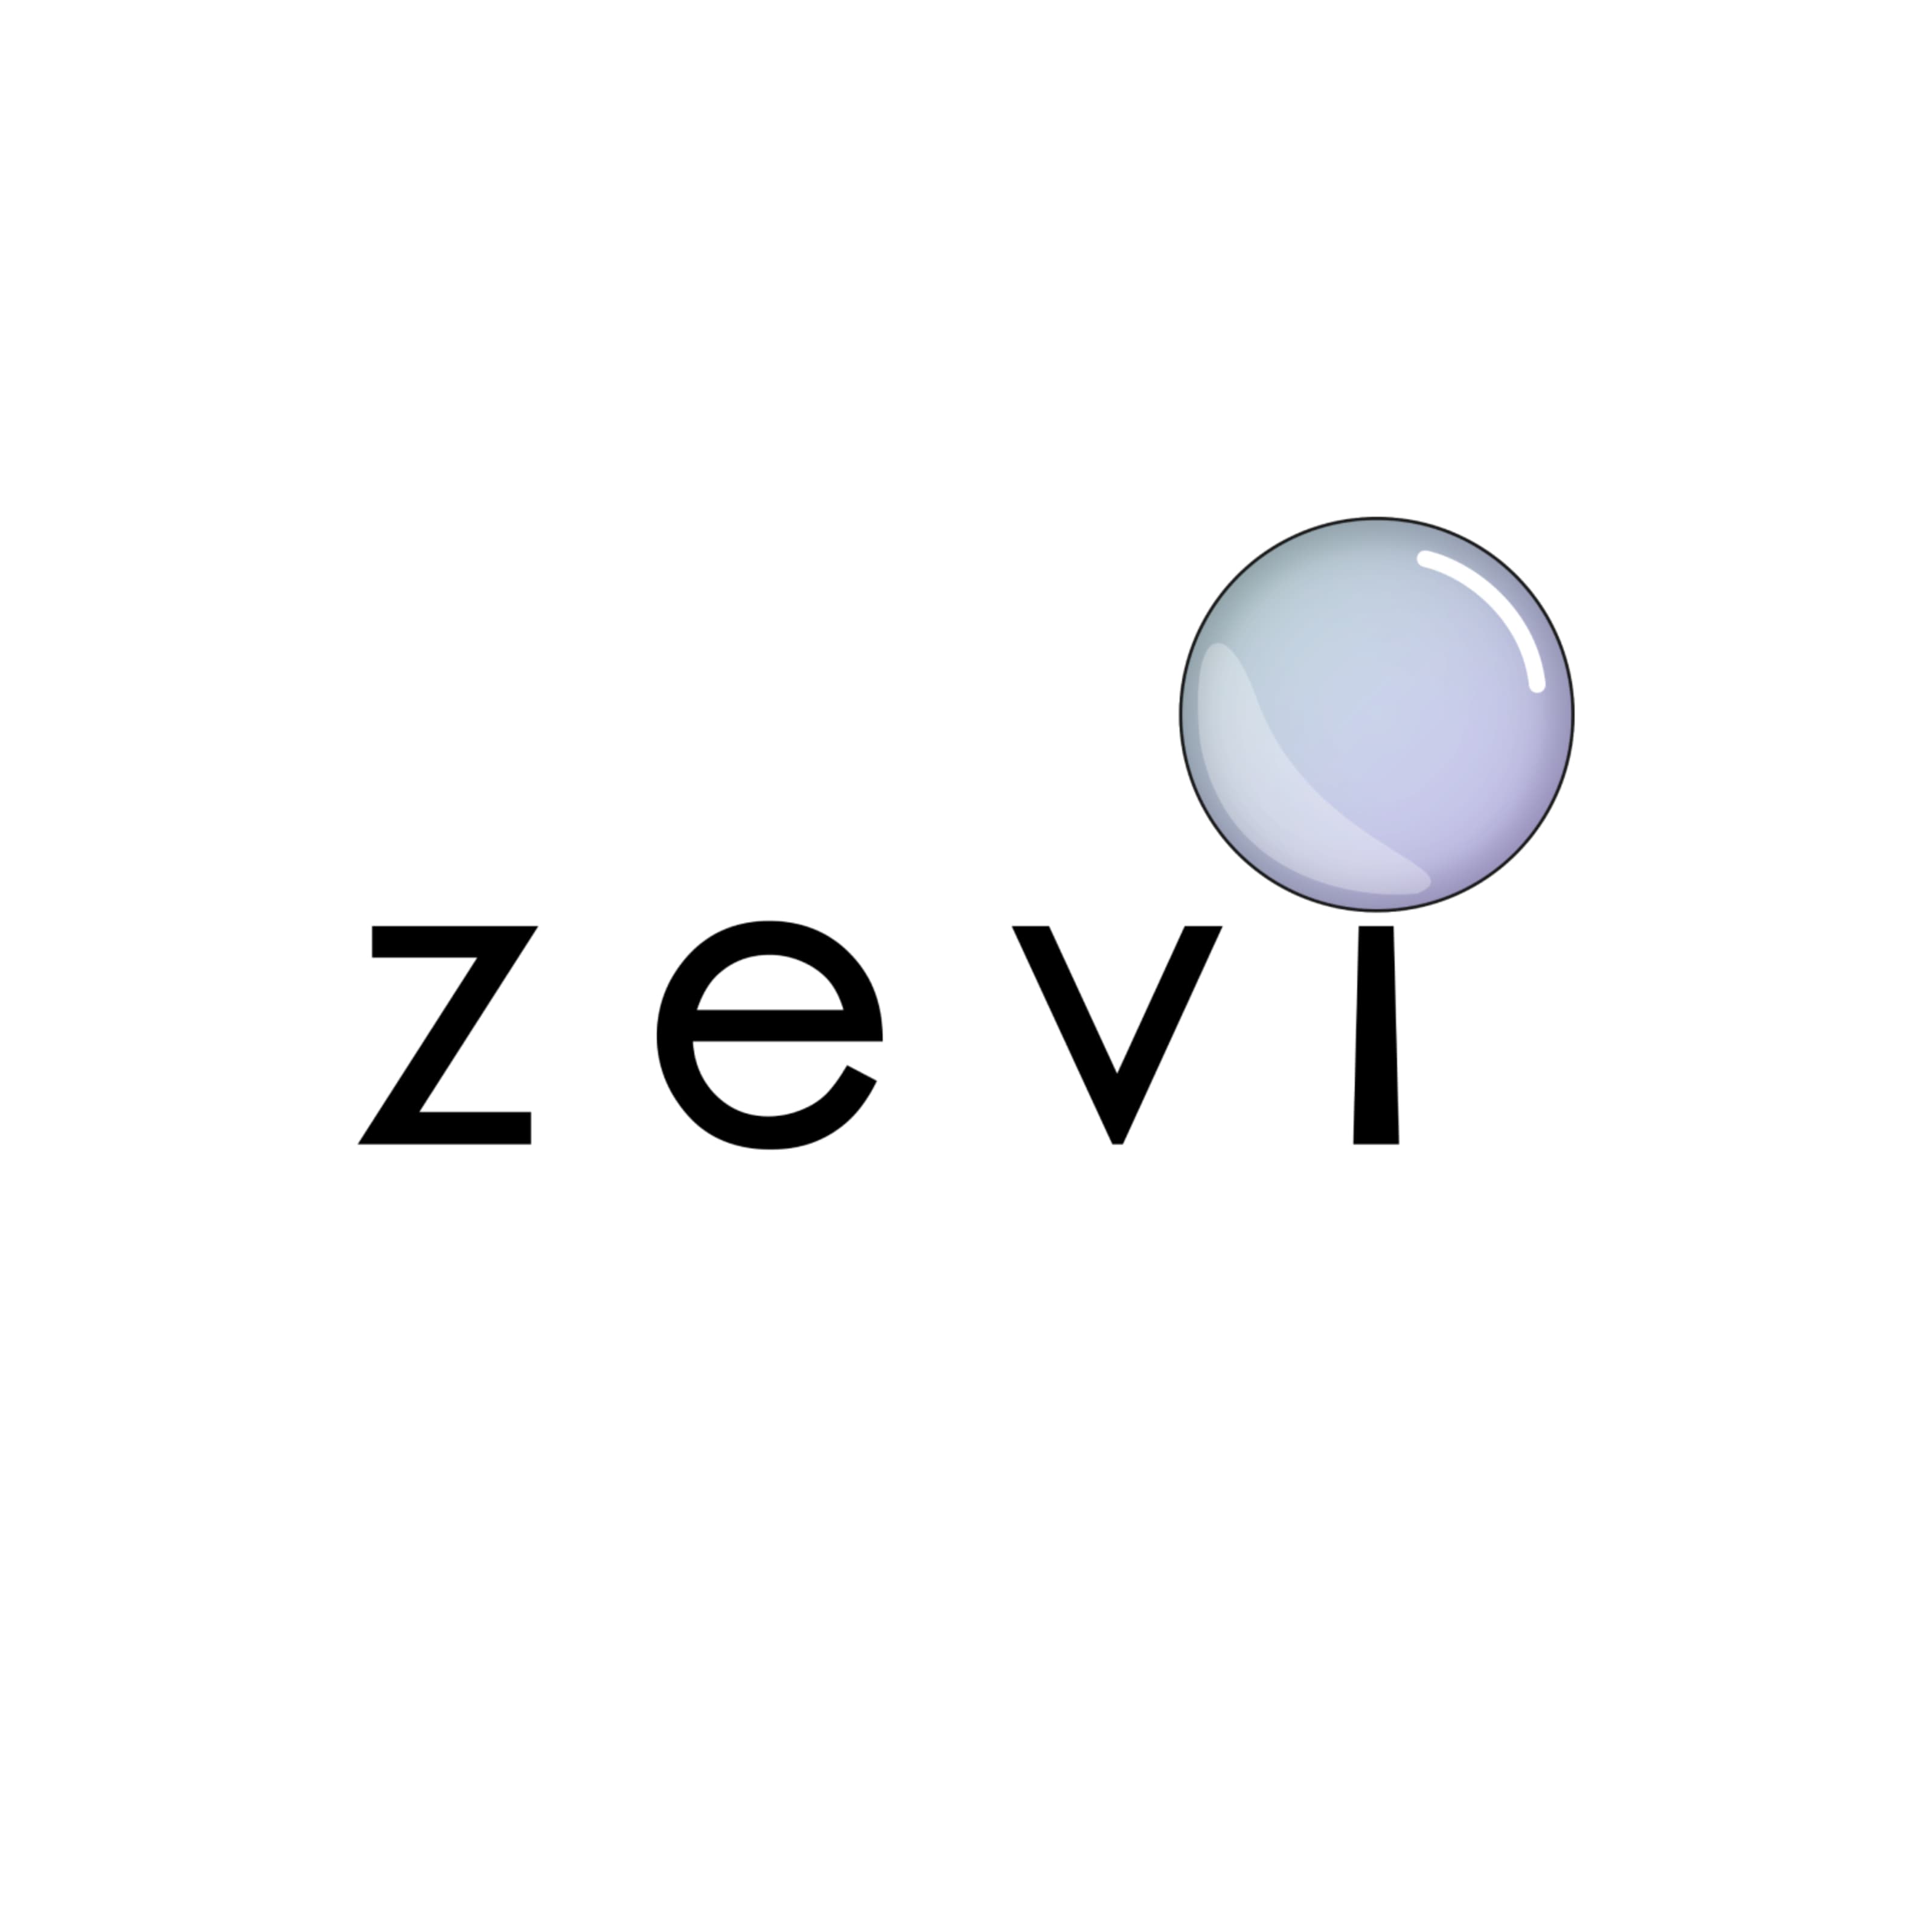 Zevi's logo